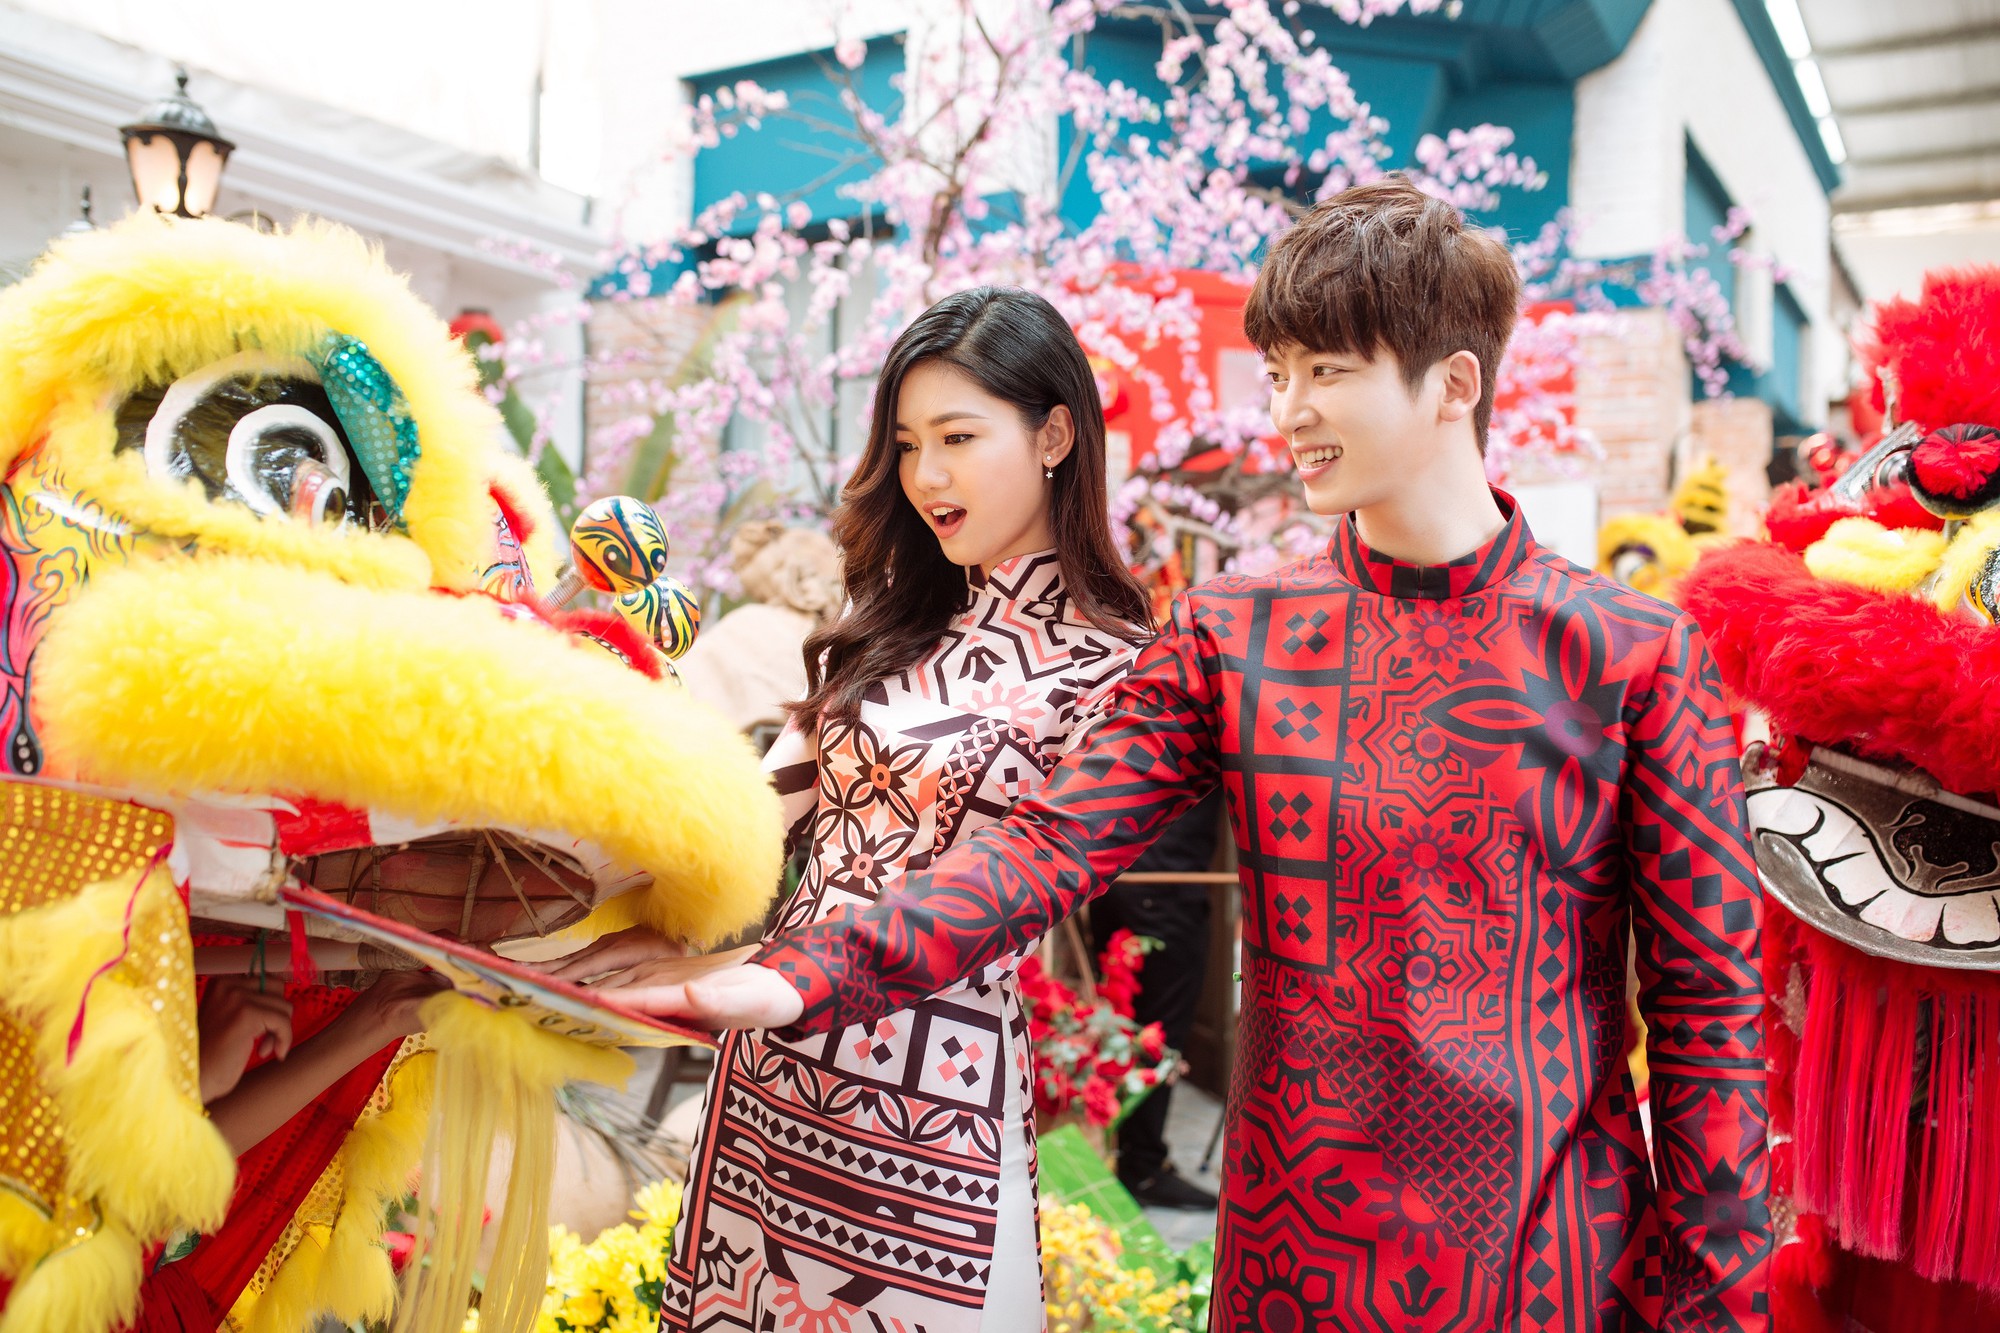 Á hậu Thanh Tú diện áo dài trẻ trung, rạng rỡ sánh đôi bên ca sĩ Hàn Quốc Shin Hyun Woo - Ảnh 6.